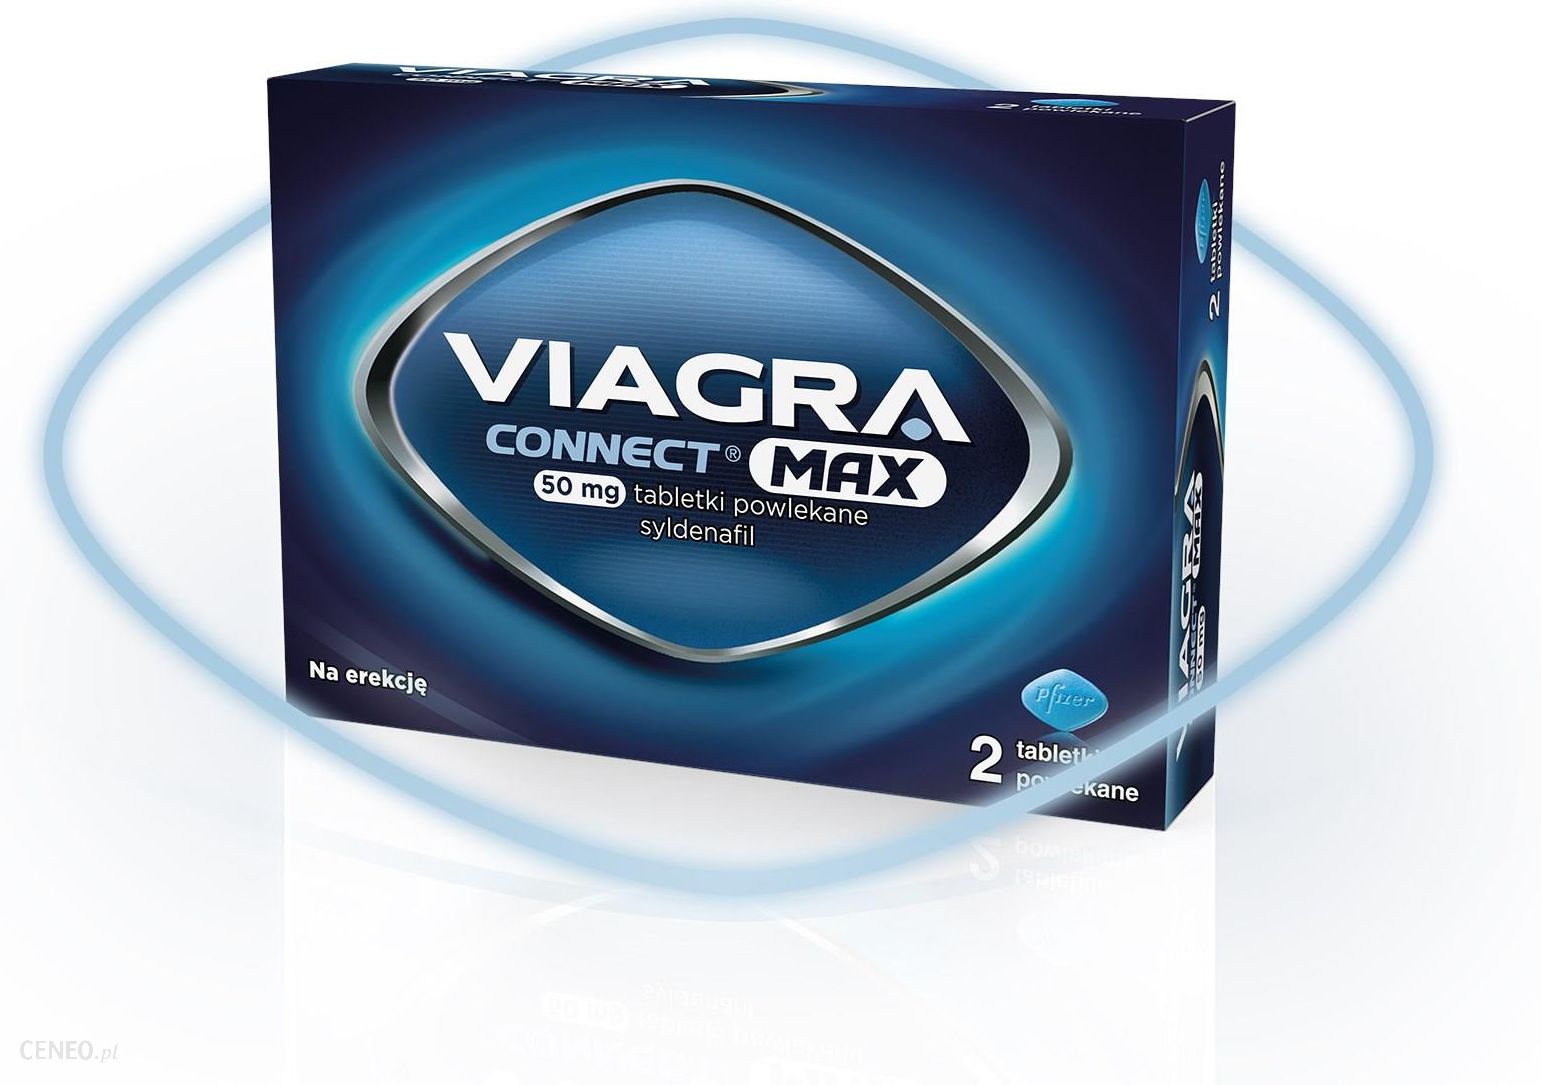 Viagra Connect® Max 50mg 2 tabletki